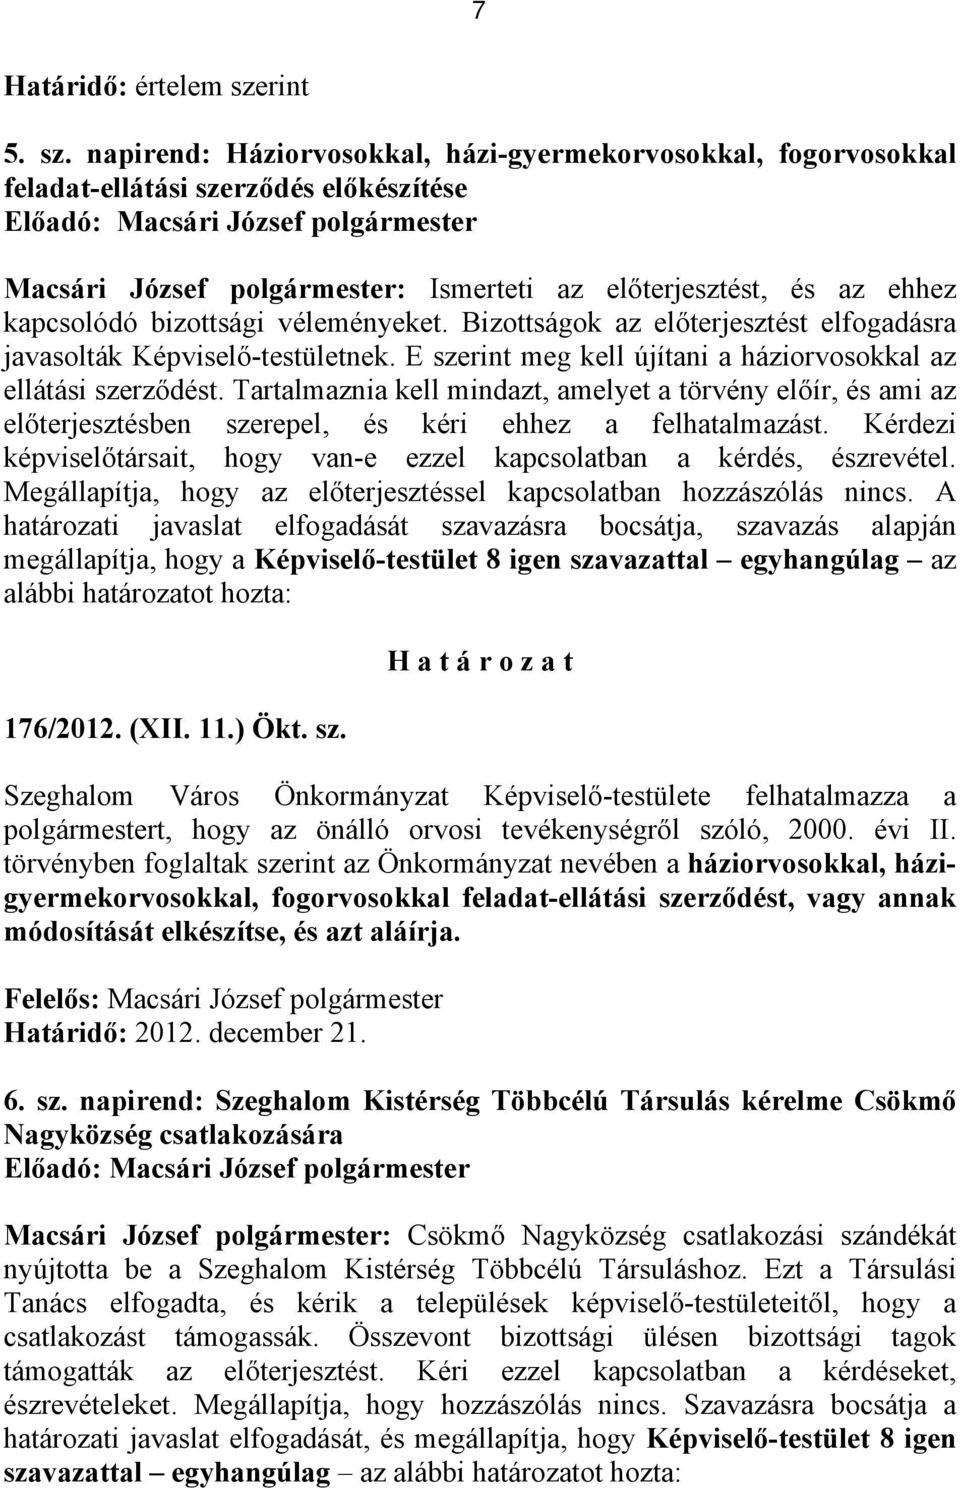 napirend: Háziorvosokkal, házi-gyermekorvosokkal, fogorvosokkal feladat-ellátási szerződés előkészítése Macsári József polgármester: Ismerteti az előterjesztést, és az ehhez kapcsolódó bizottsági